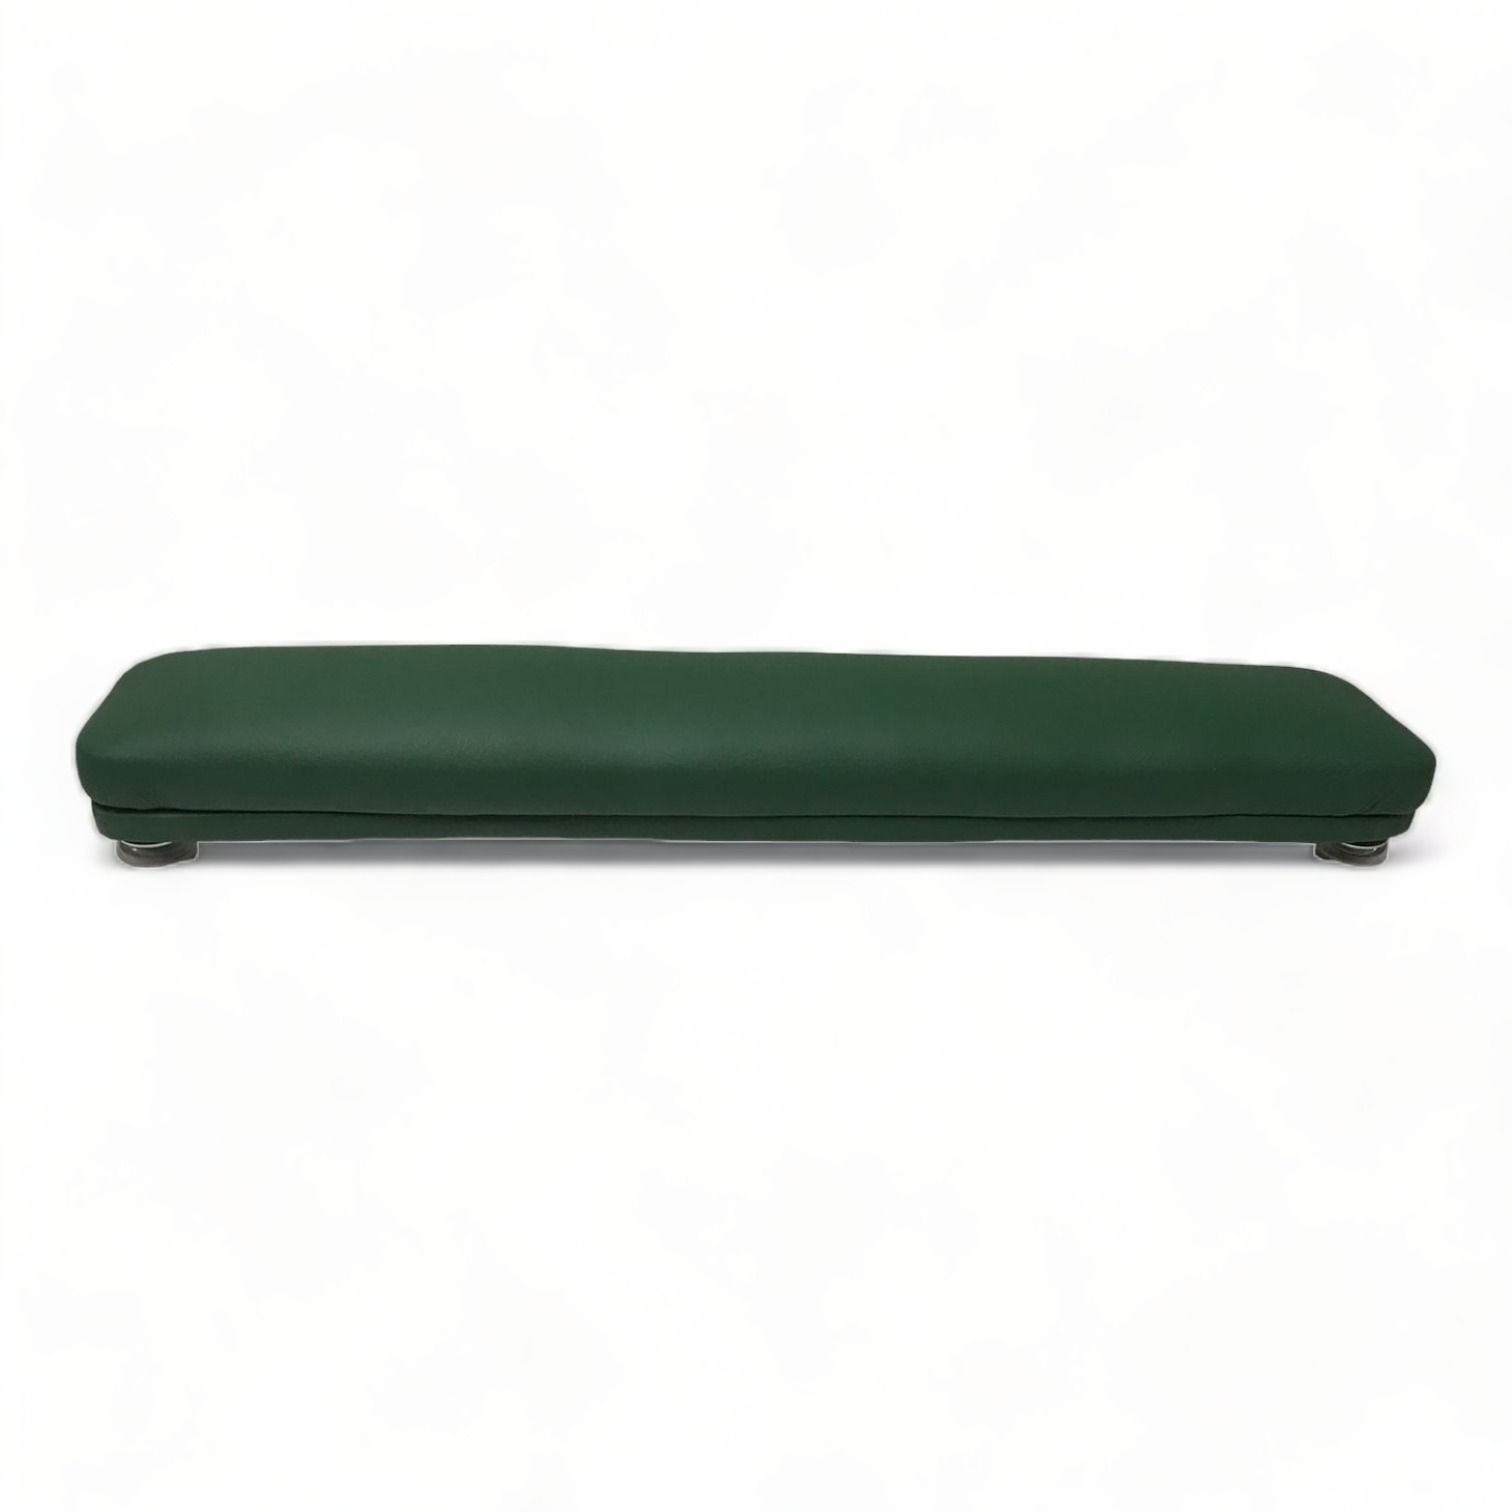 Валик для маникюра Мебель Бьюти Бьюти Зеленый 50 см валик настольный irisk клетка 03 зеленый